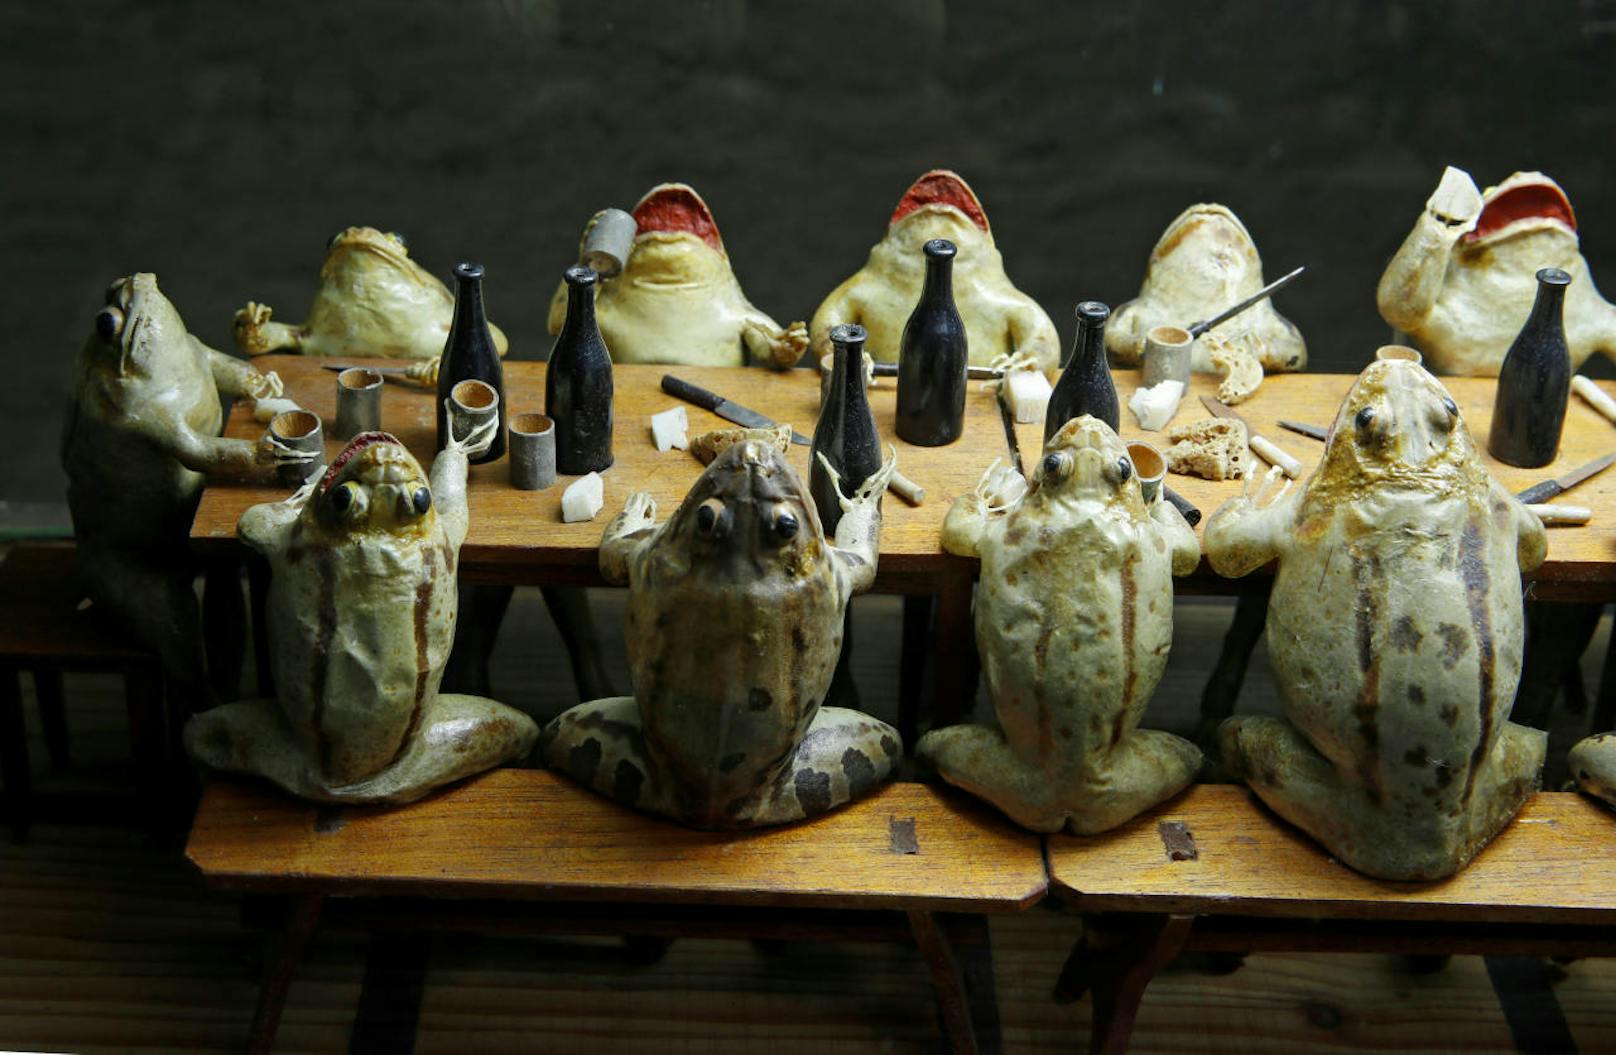 Frösche essen in einem Wahllokal. Im Froschmuseum in Estavayer-le-Lac in der Schweiz stellen 108 ausgestopfte Frösche Alltagsszenen aus dem 19. Jahrhundert dar.